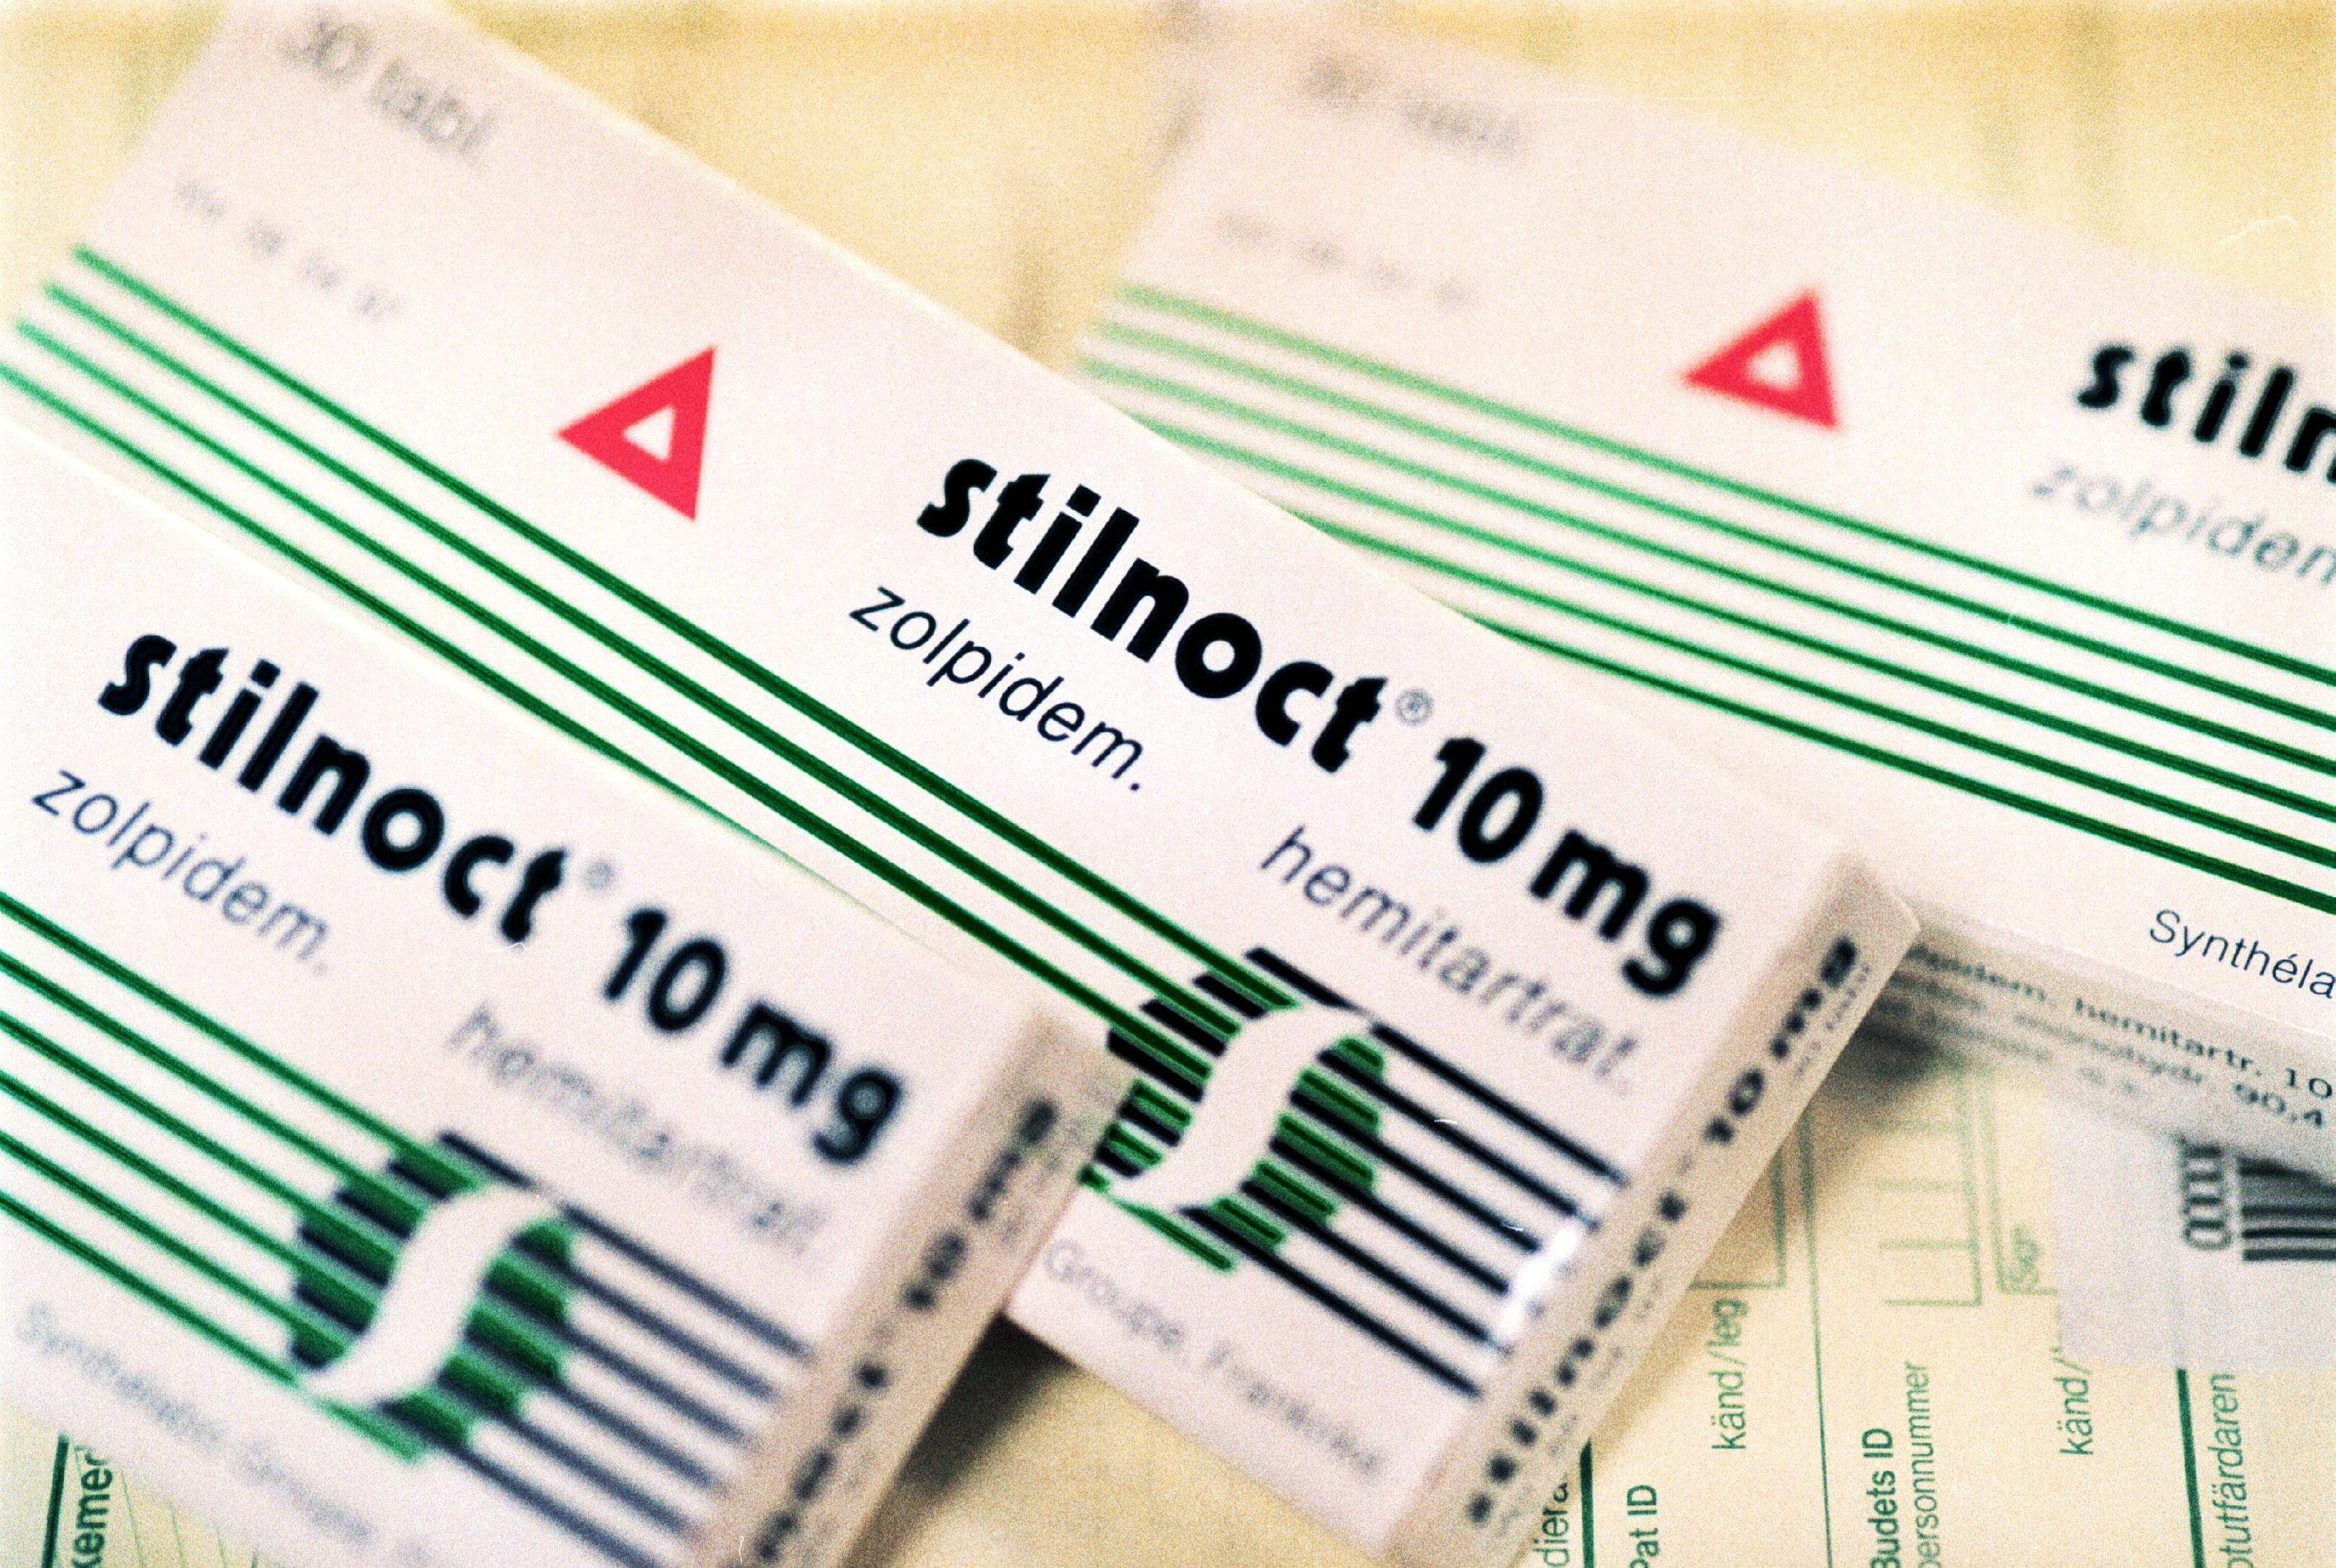 Stilnoct är ett av de preparat som skrivits ut av läkaren.